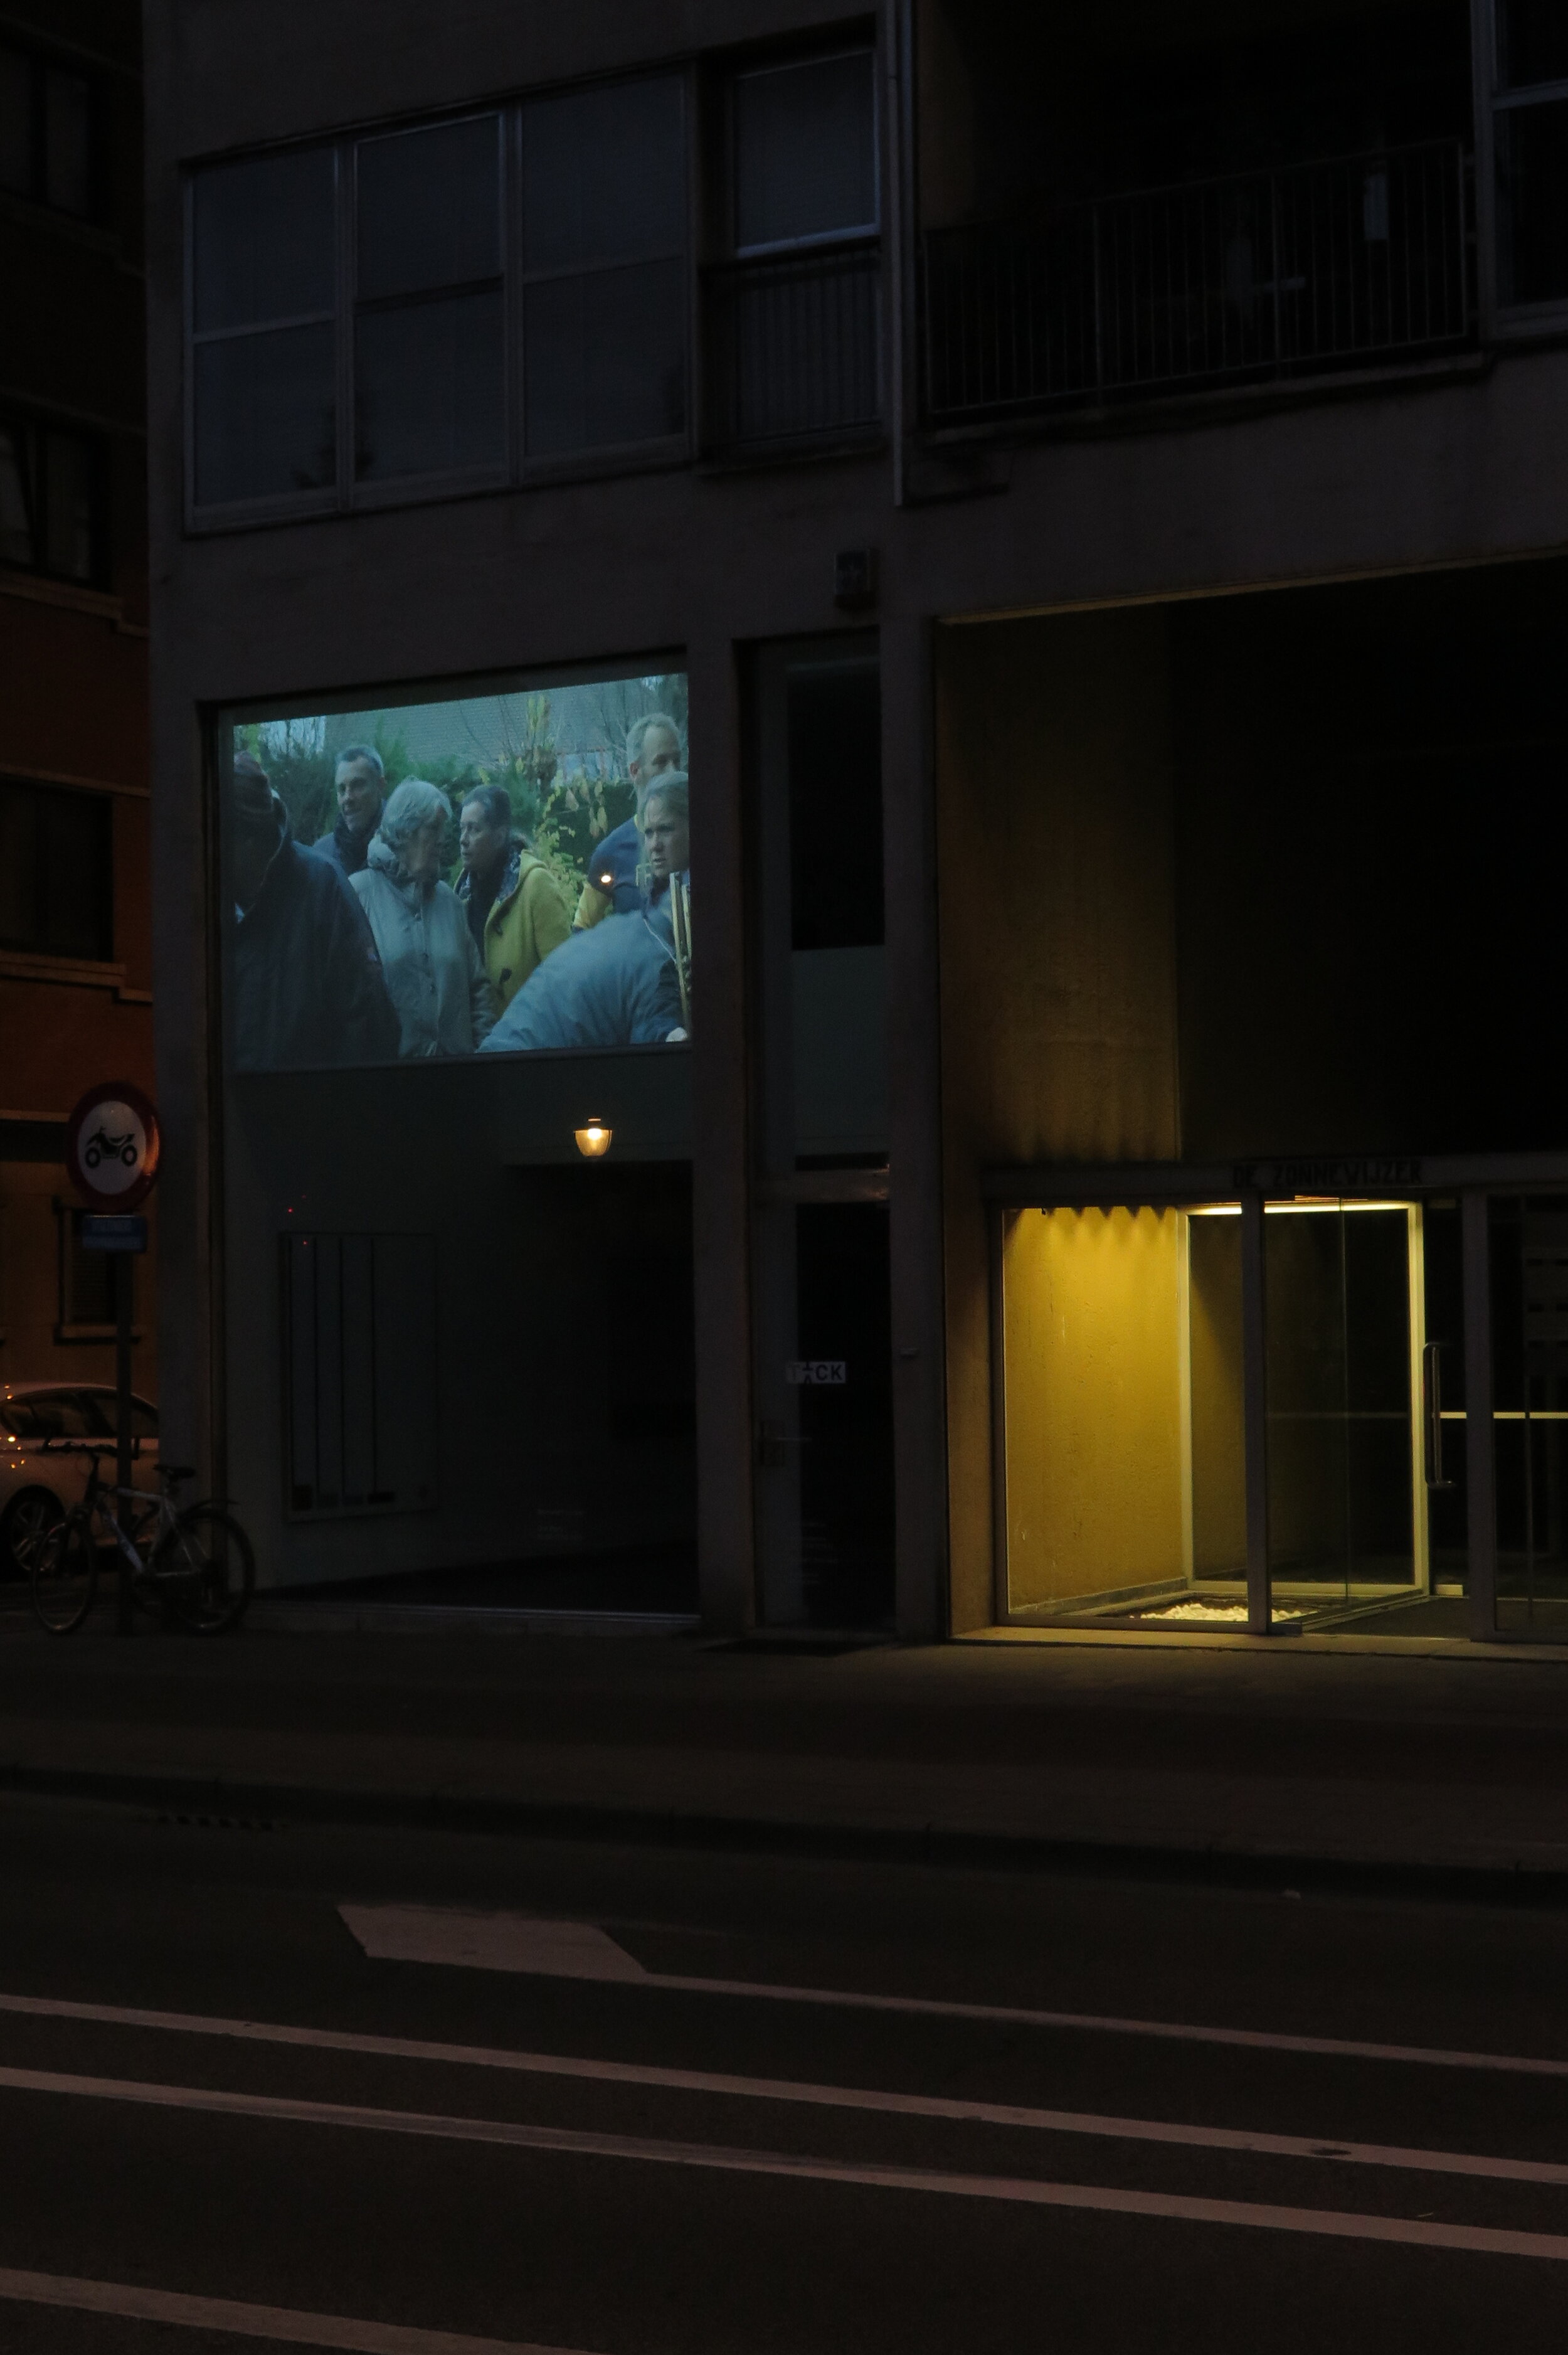 Tick tack cinema, Antwerp